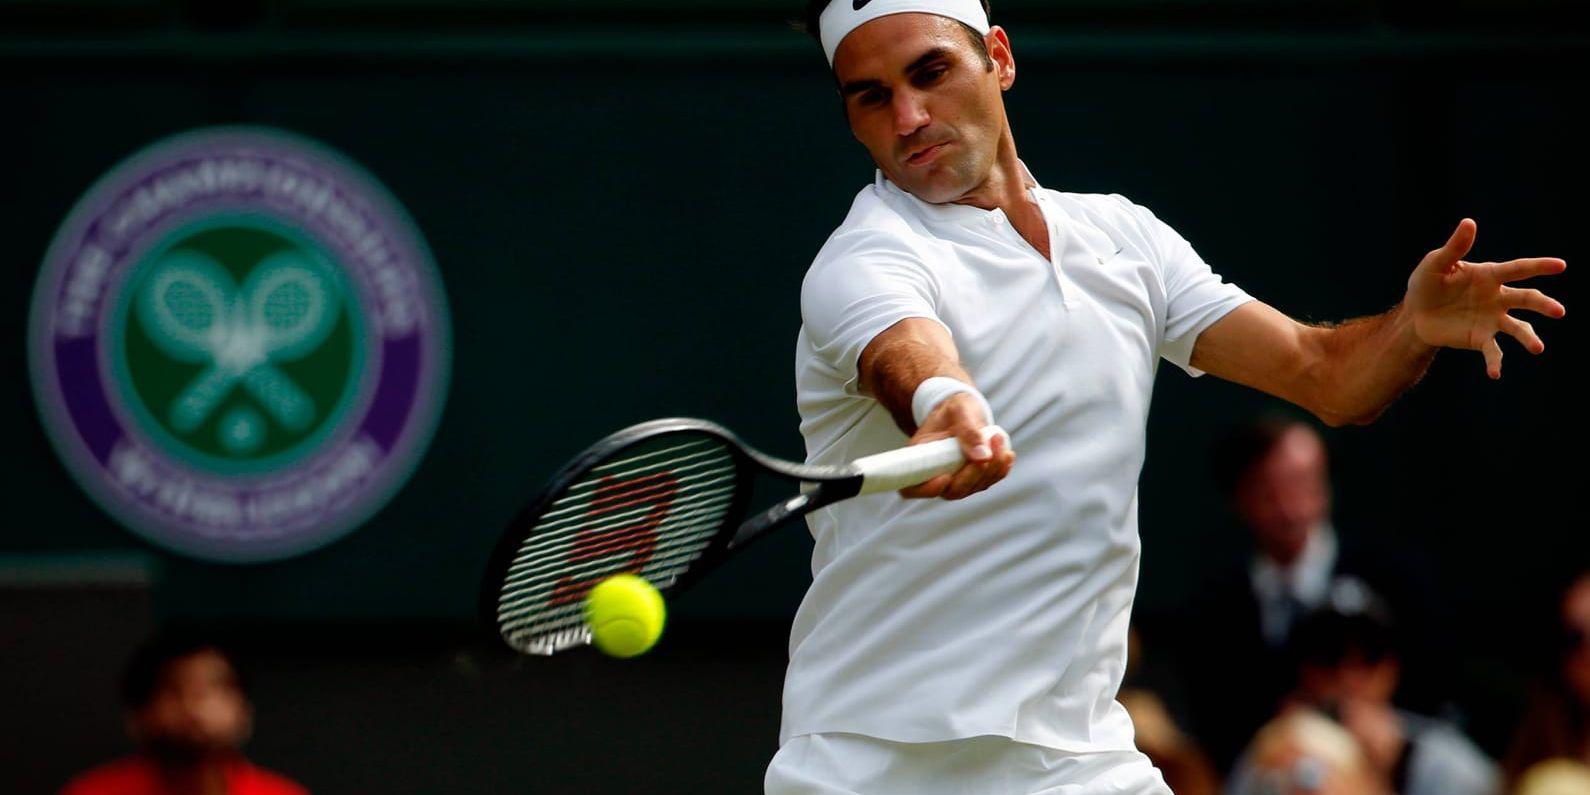 Schweiziske tennislegendaren Roger Federer inledde sitt spel i årets Wimbledon under tisdagen.